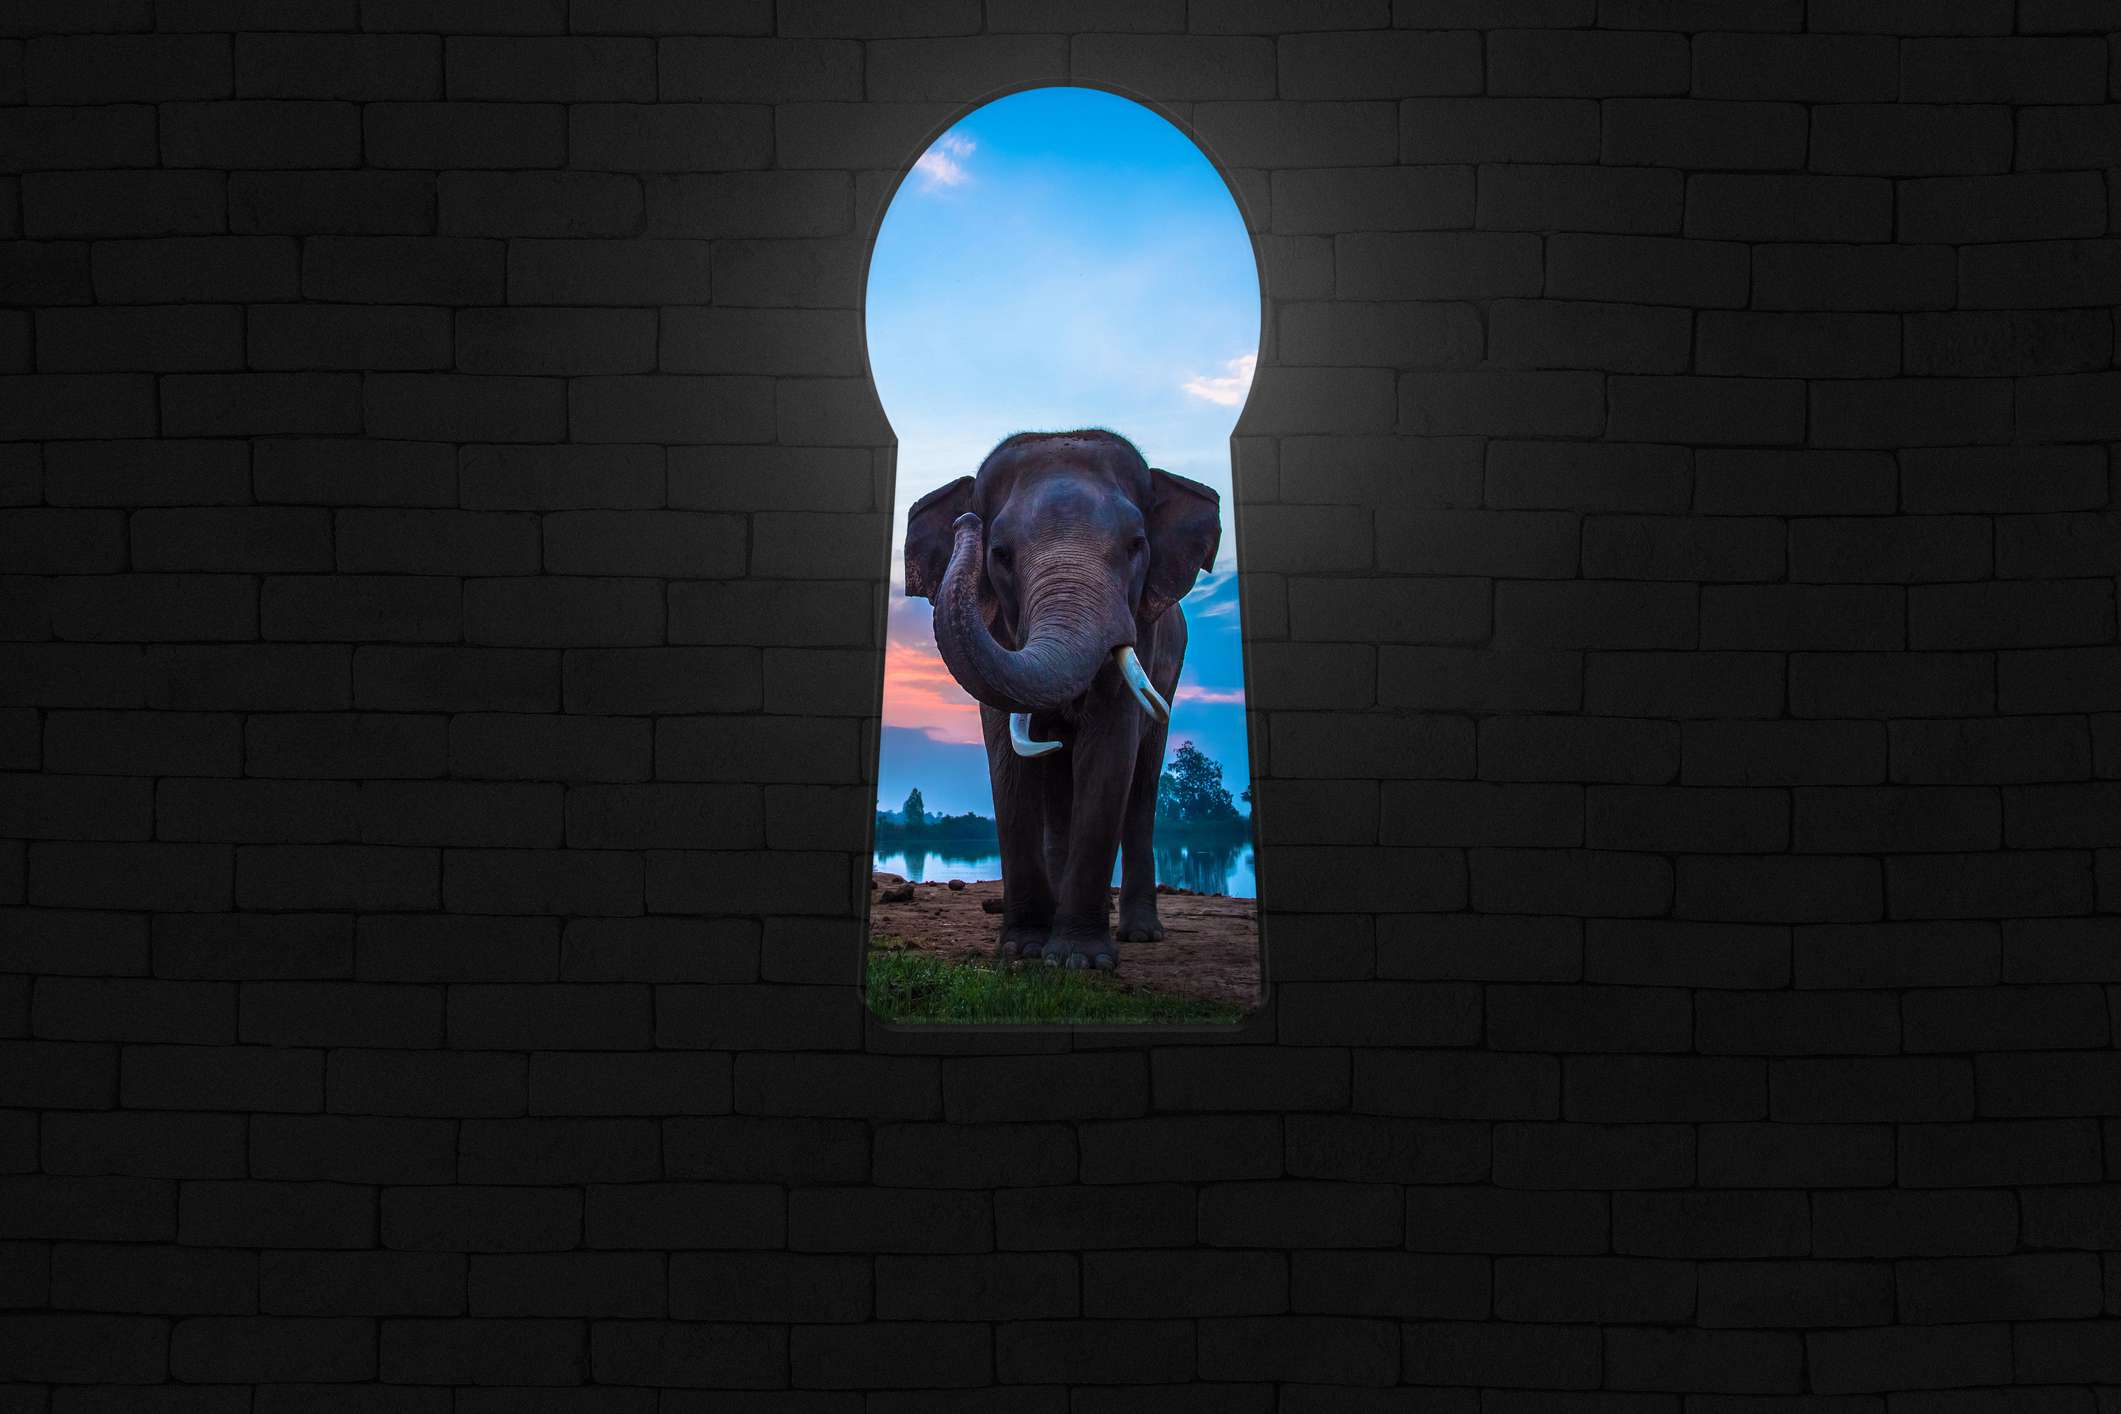 Um elefante sendo visto através de uma abertura em forma de fechadura em uma parede de tijolos